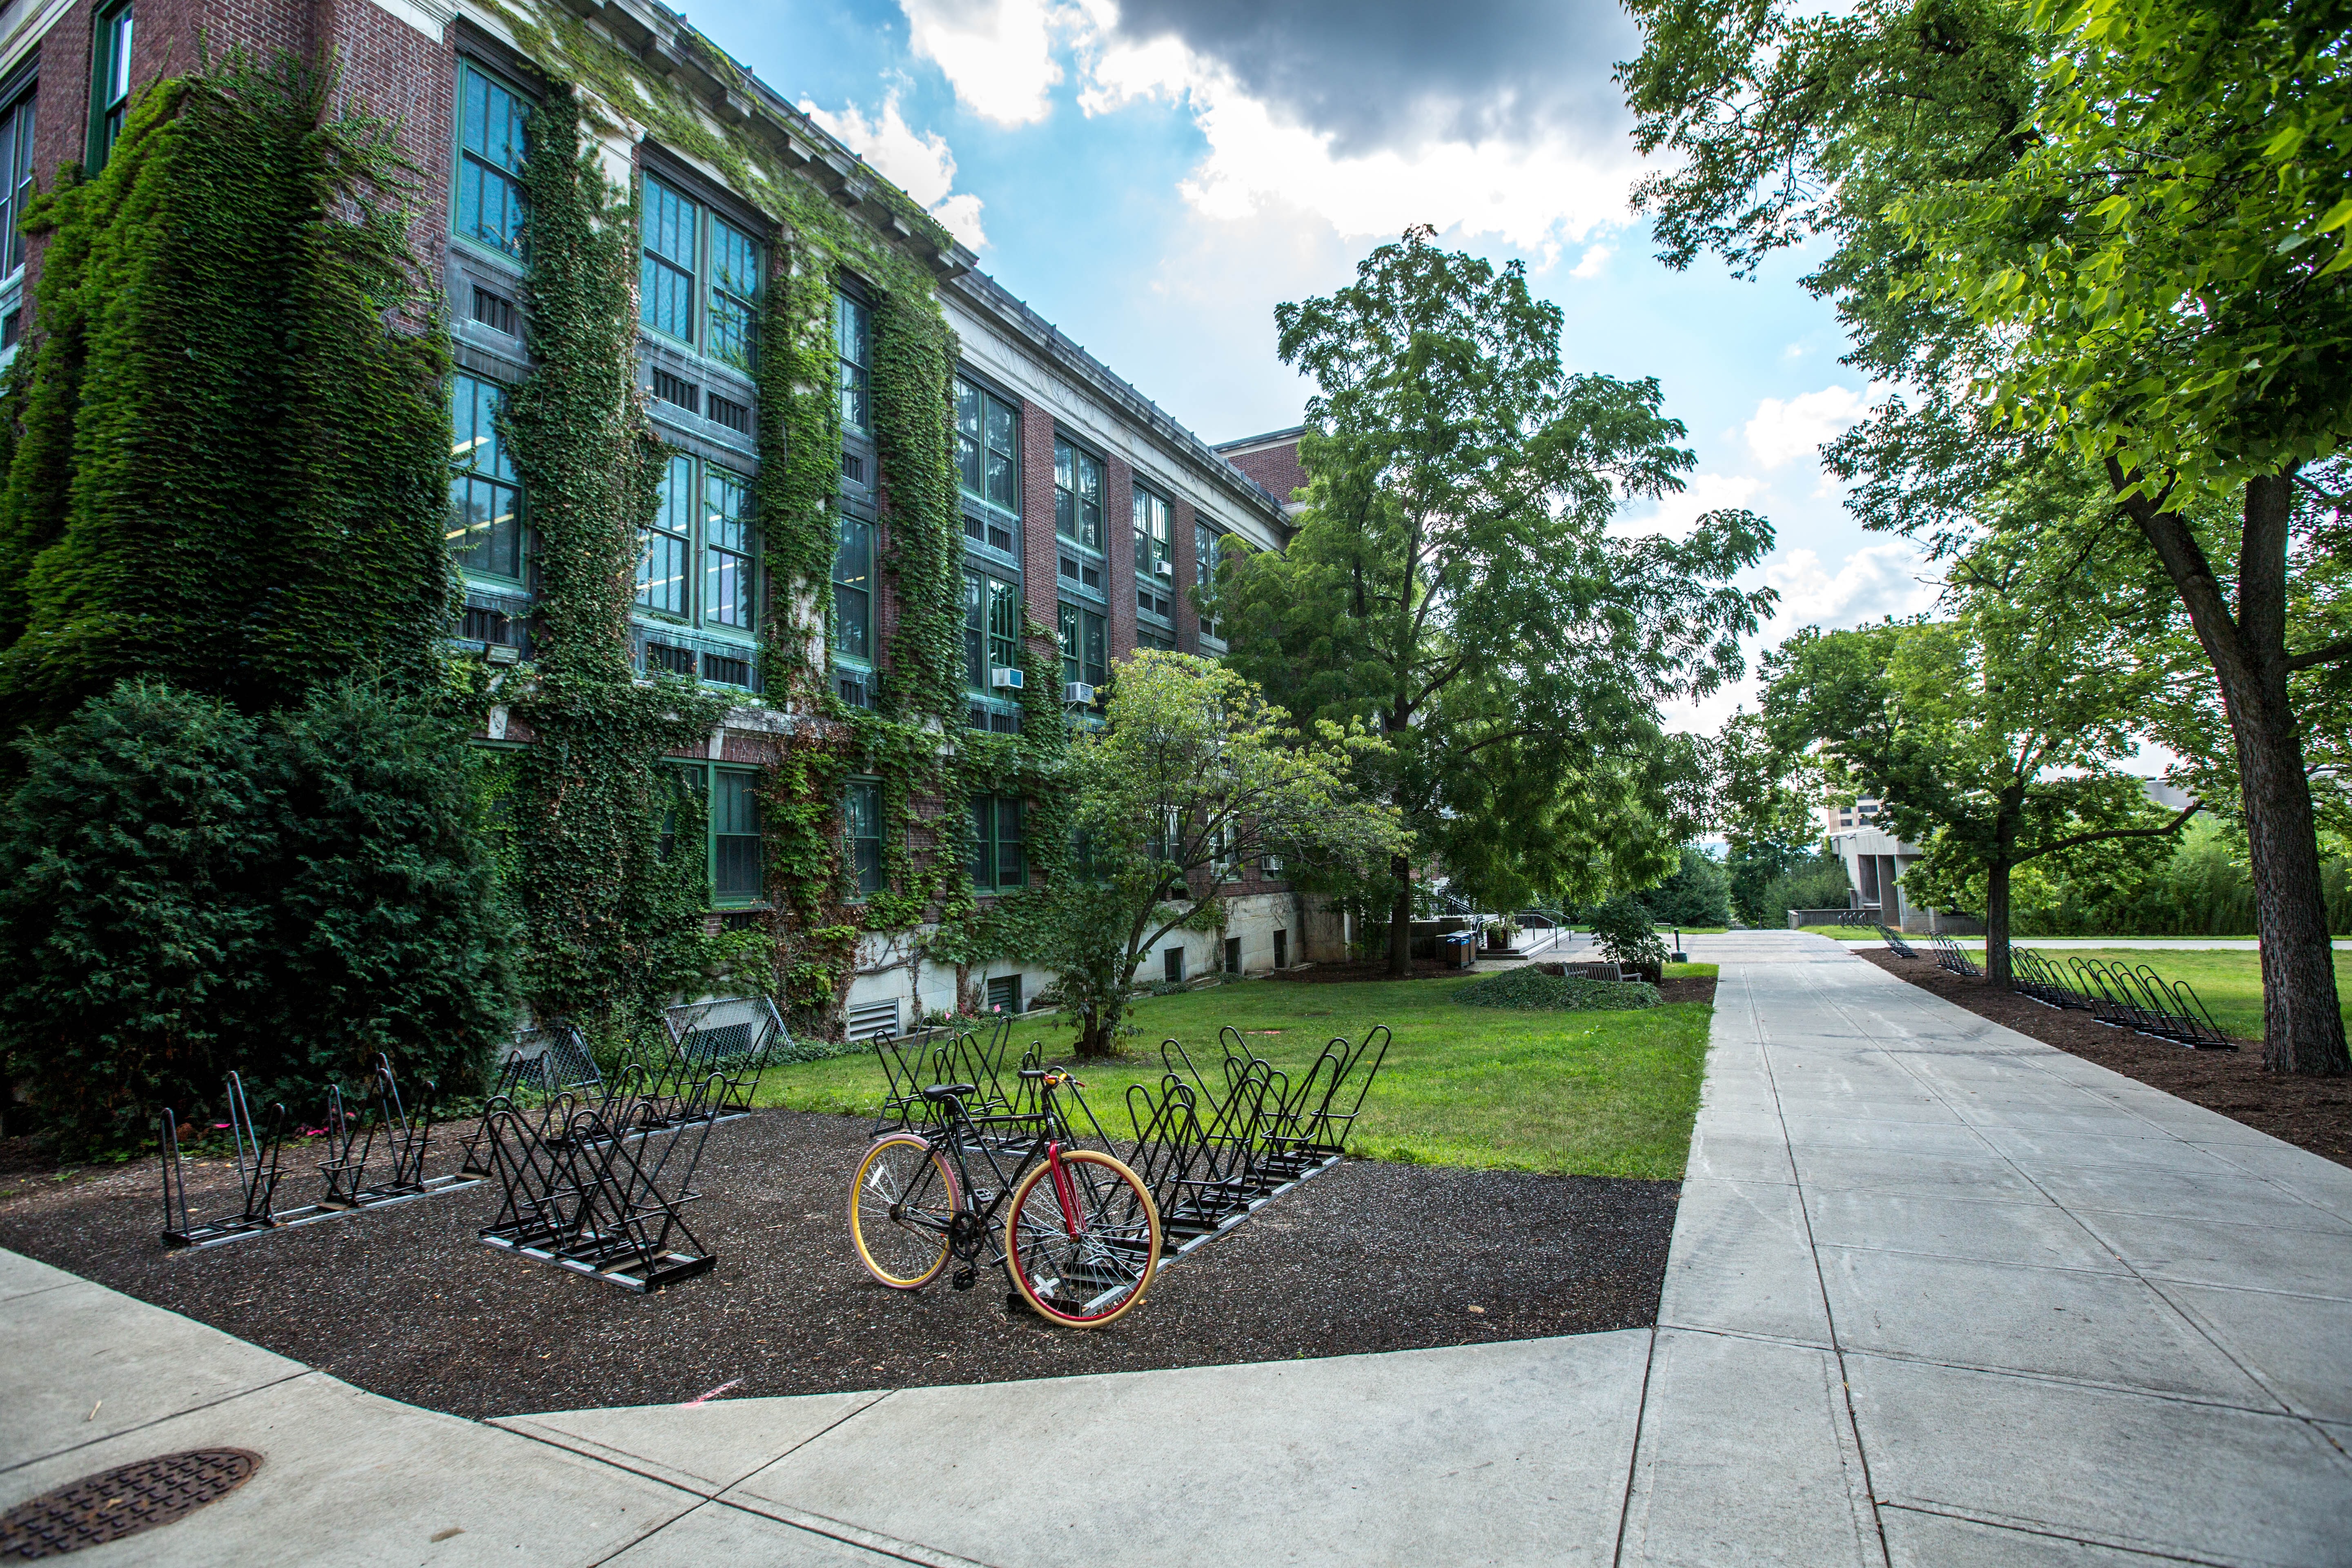 College campus exterior, bike at rack. 